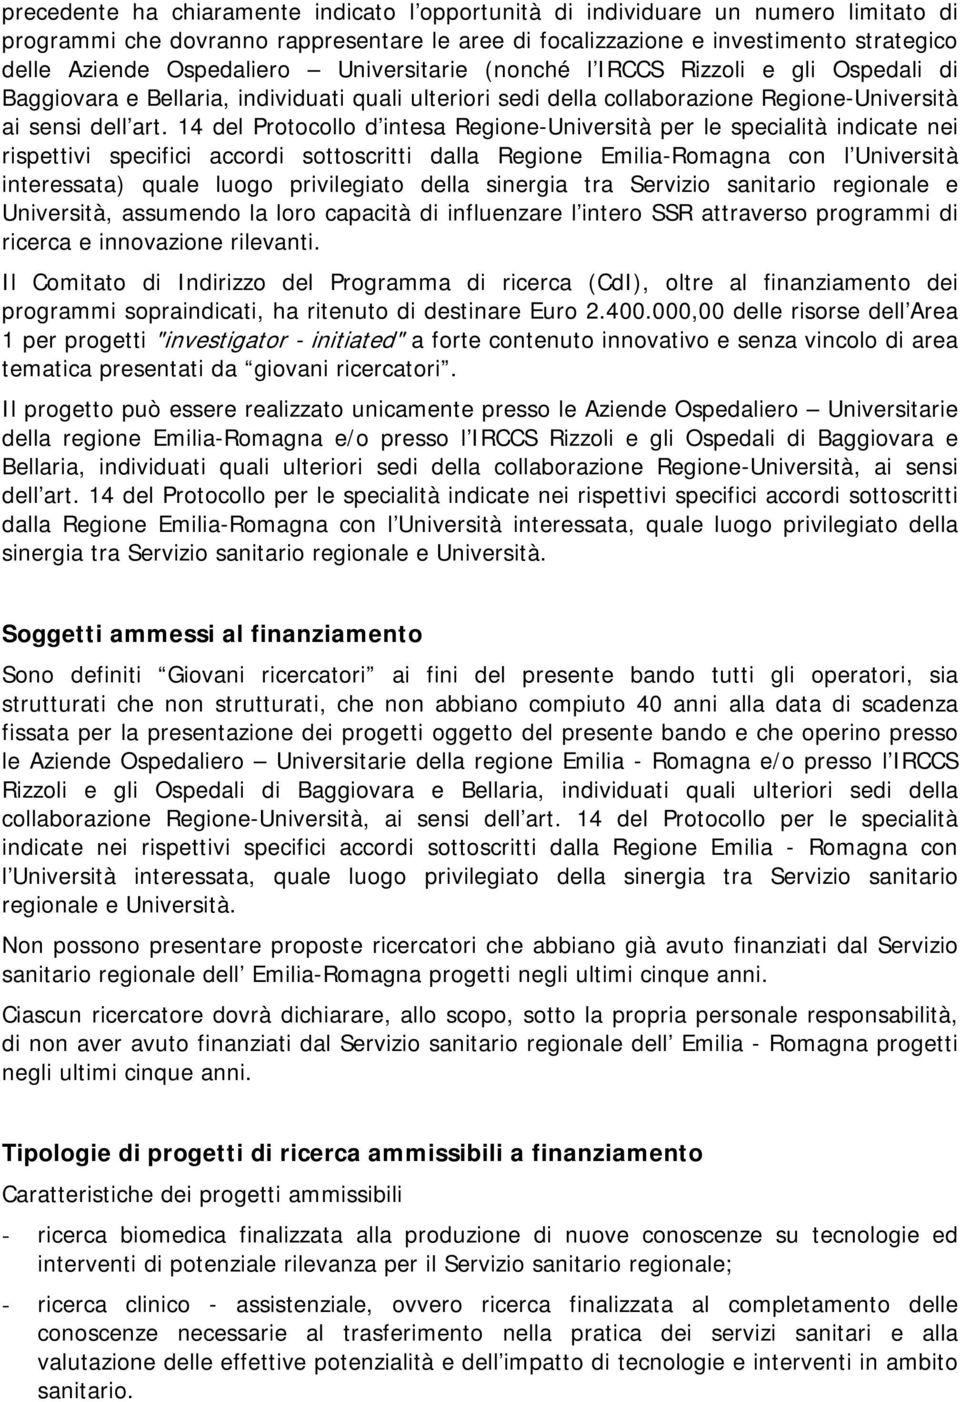 14 del Protocollo d intesa Regione-Università per le specialità indicate nei rispettivi specifici accordi sottoscritti dalla Regione Emilia-Romagna con l Università interessata) quale luogo